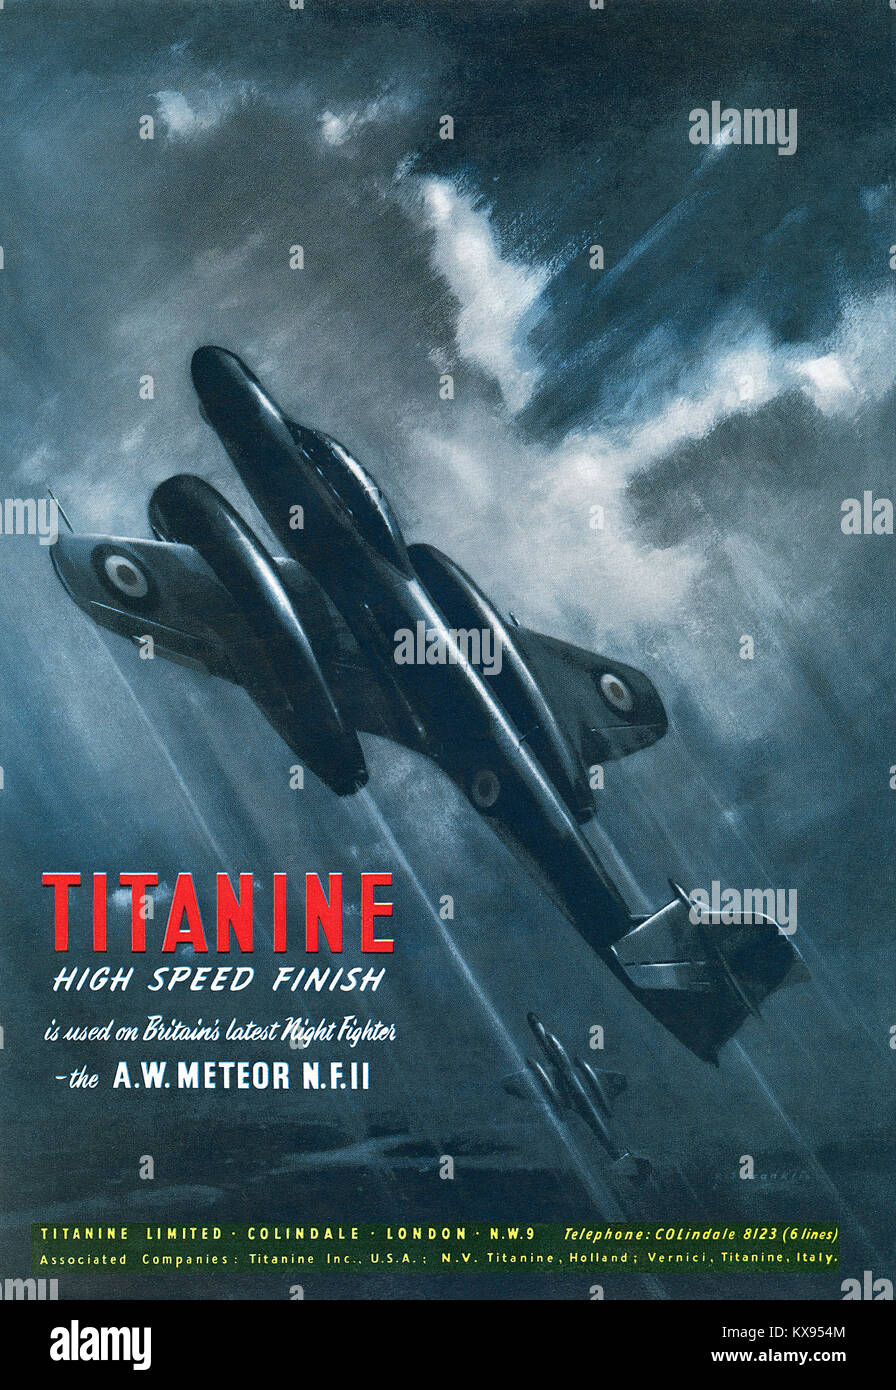 1951 britischen Werbung für Titanine beschränkt, Hersteller von Aviation Coatings (Flugzeug dope), mit der Gloster Meteor NF 11 jet Nacht Kampfflugzeuge. Stockfoto